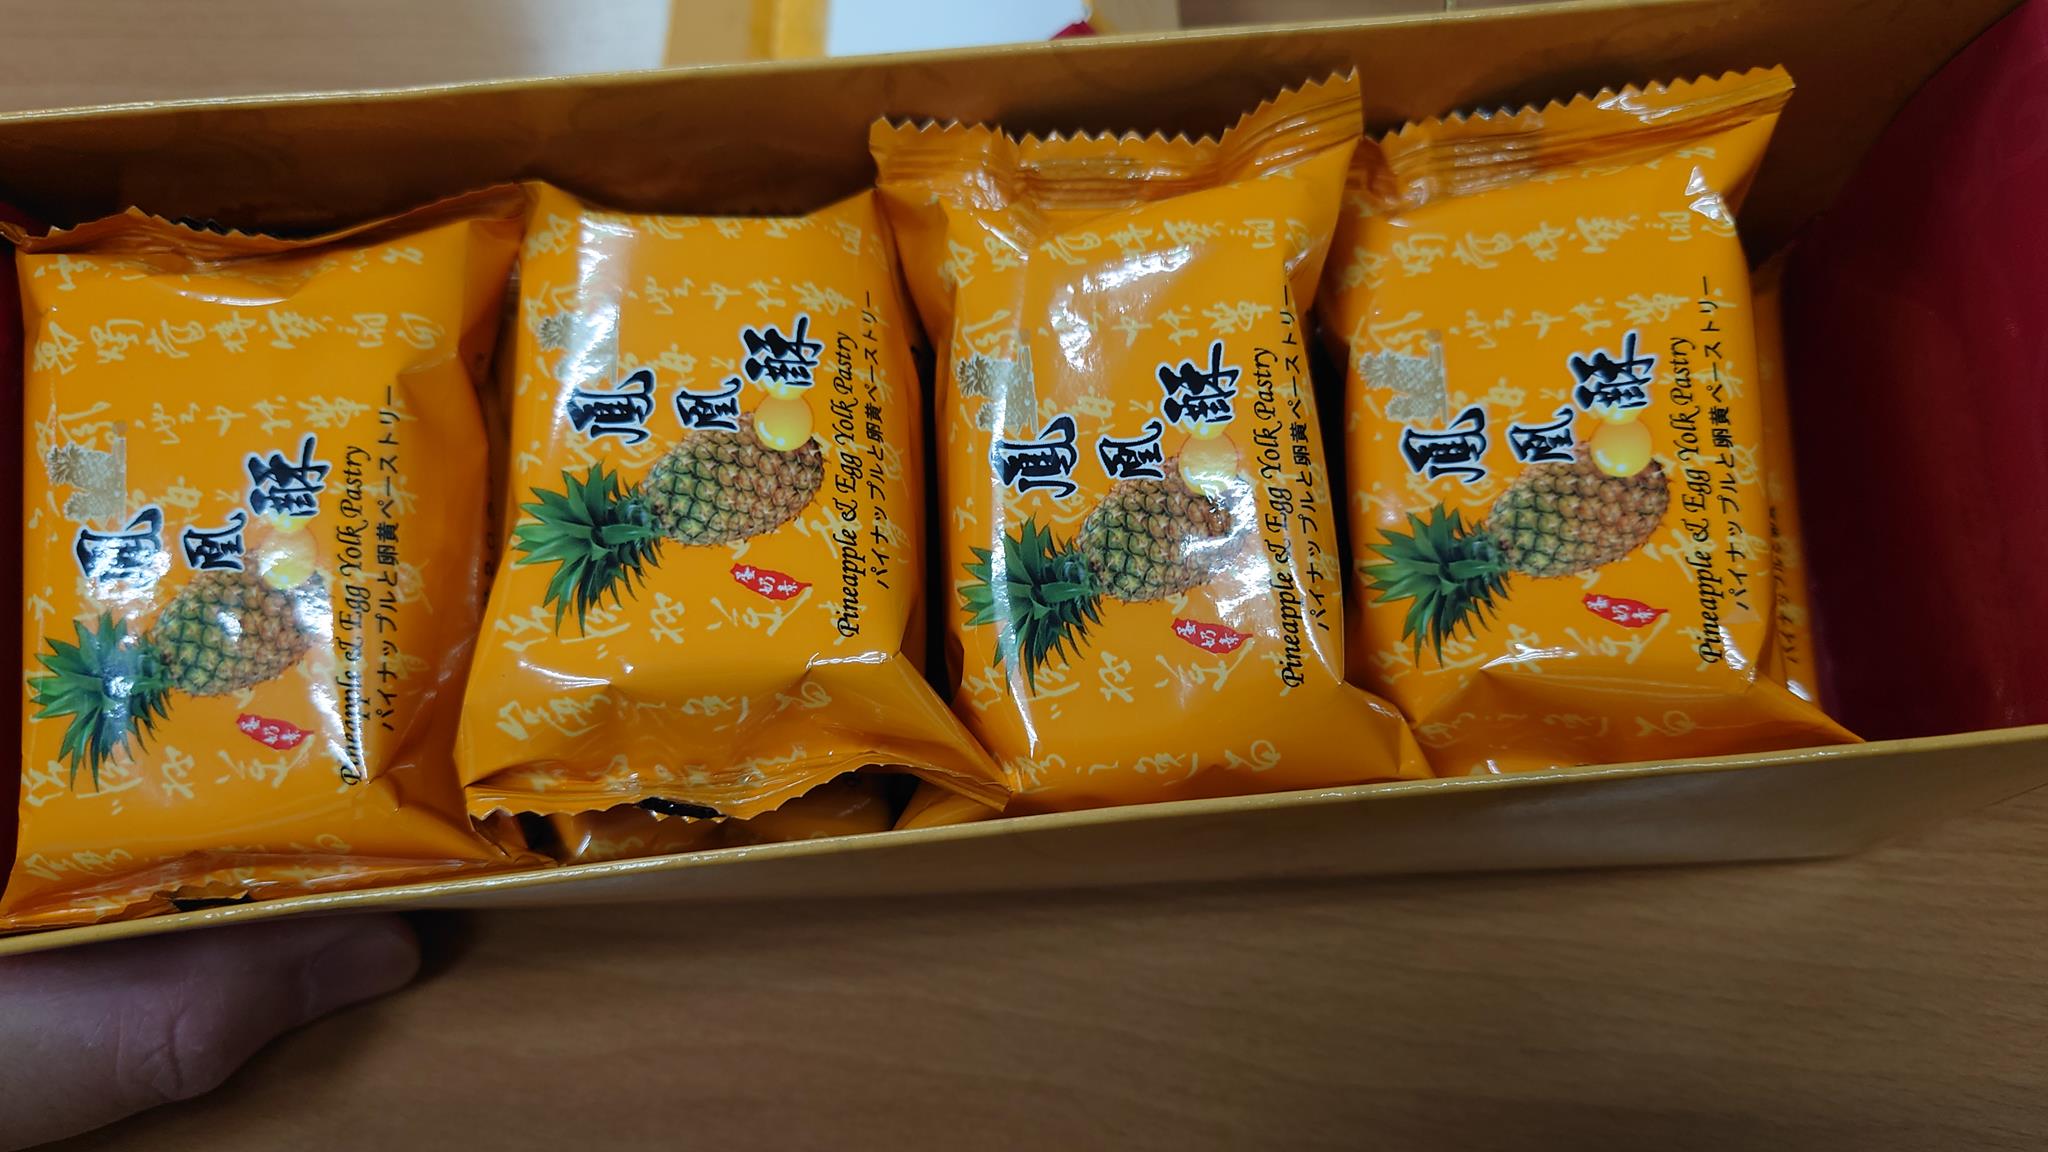 小潘鳳凰酥 酥香味濃的人氣鳳凰酥 人氣零食 板橋經典美食 台灣貪吃胖的玩樂故事